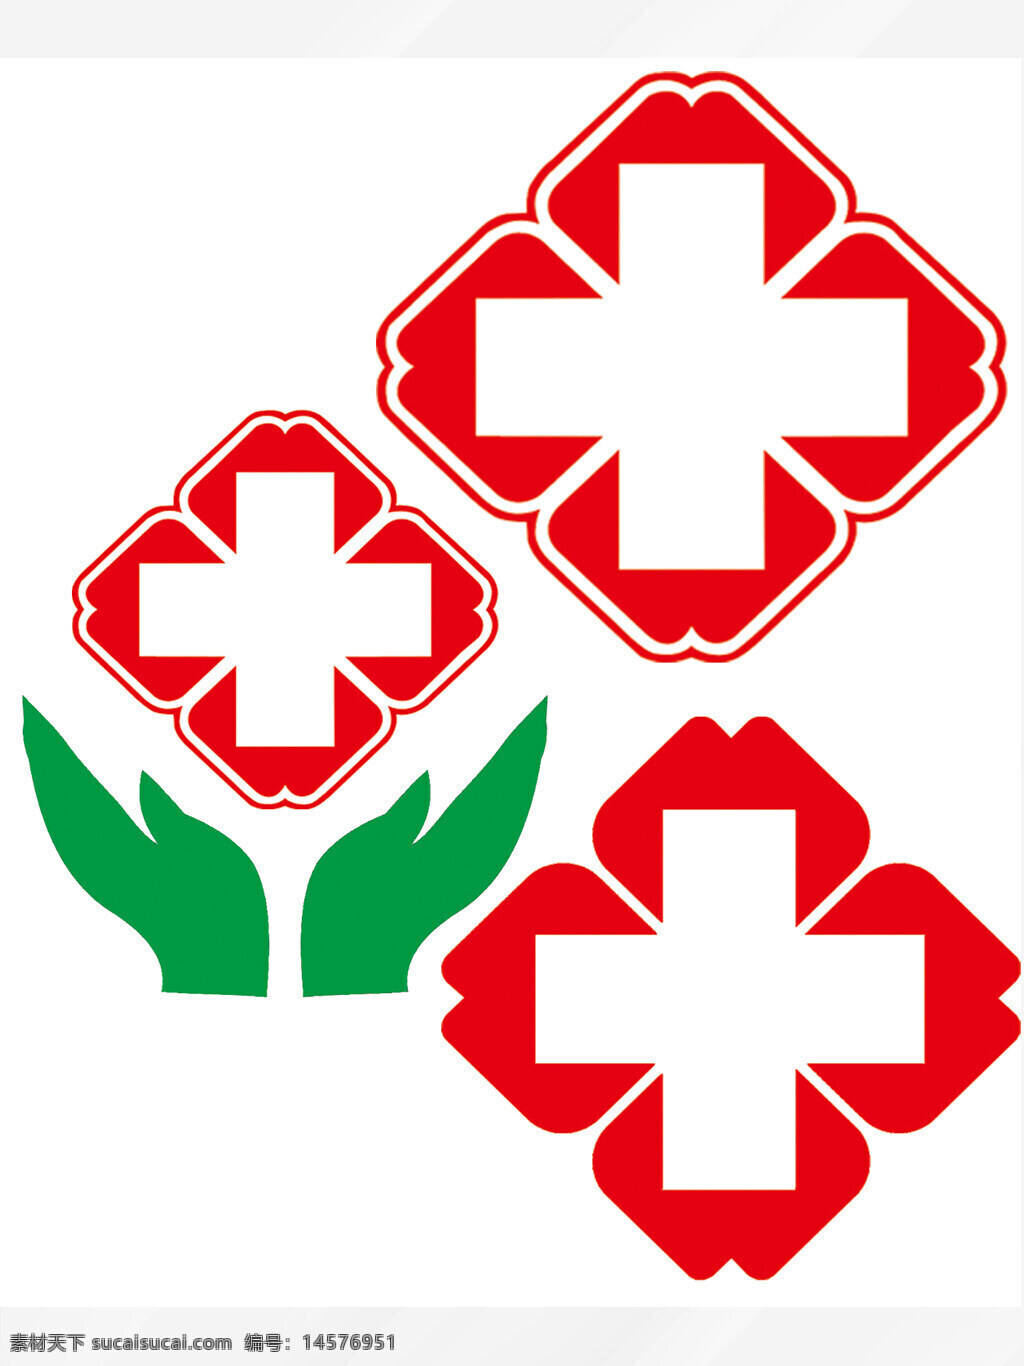 医院logo 医院标志 医院 红十字 诊所标志 诊所logo 门诊标志 门诊logo 医院门诊 门诊